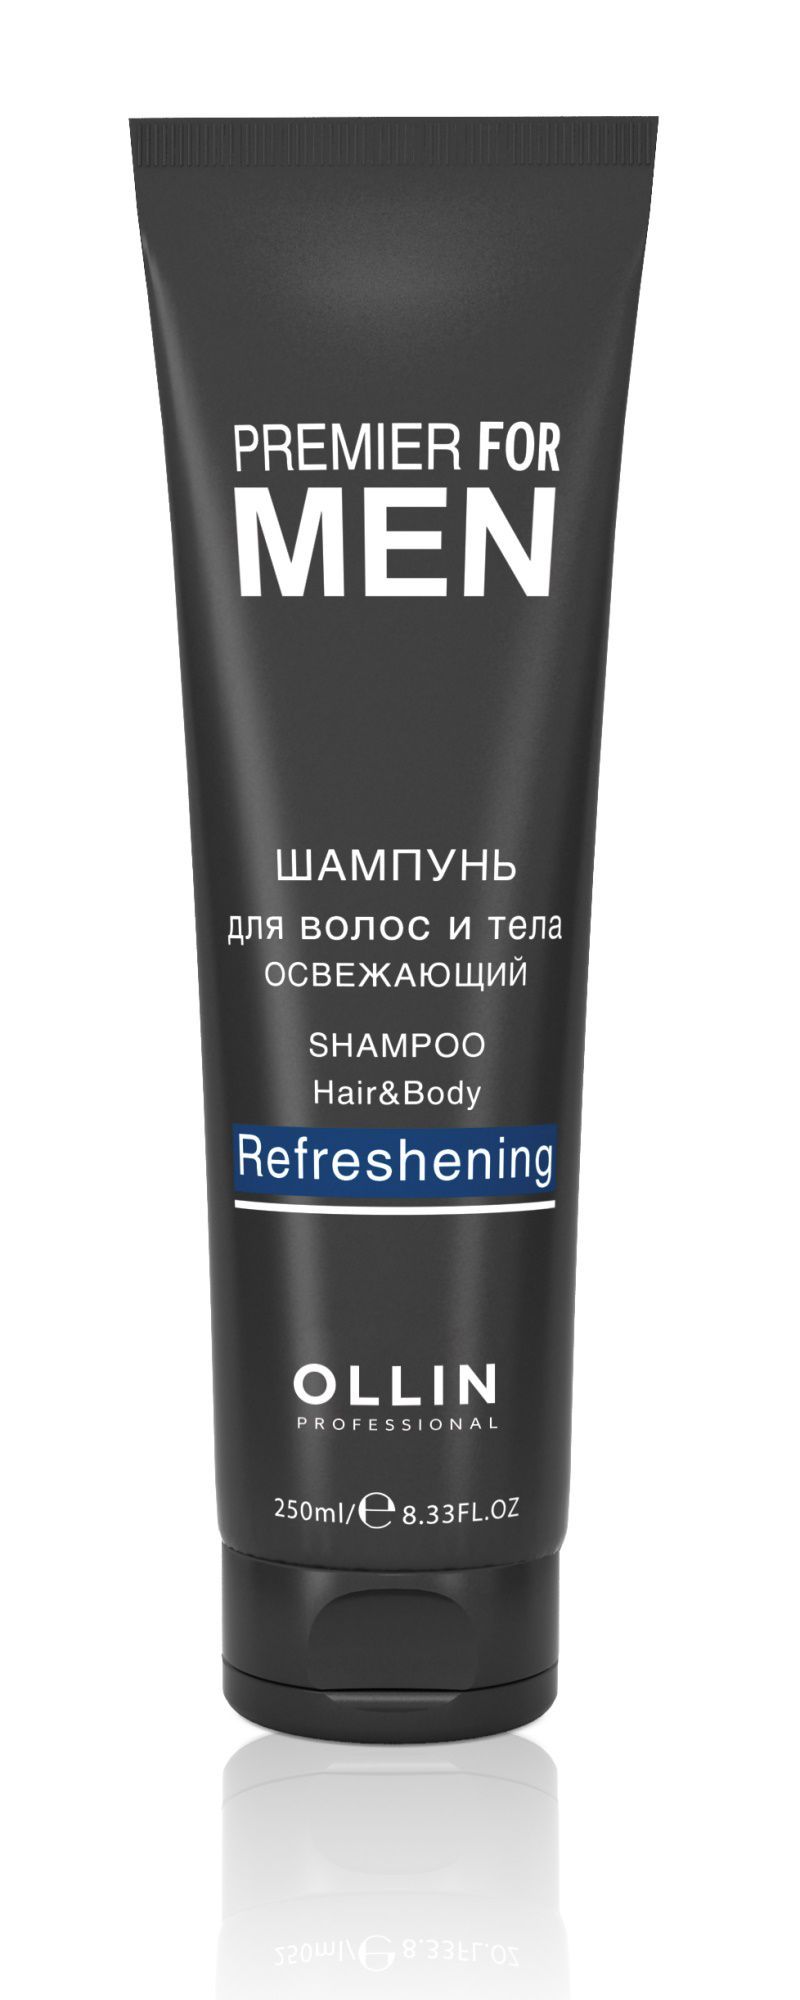 Ollin, Шампунь для волос и тела «Освежающий» серии «Premier for men», Фото интернет-магазин Премиум-Косметика.РФ